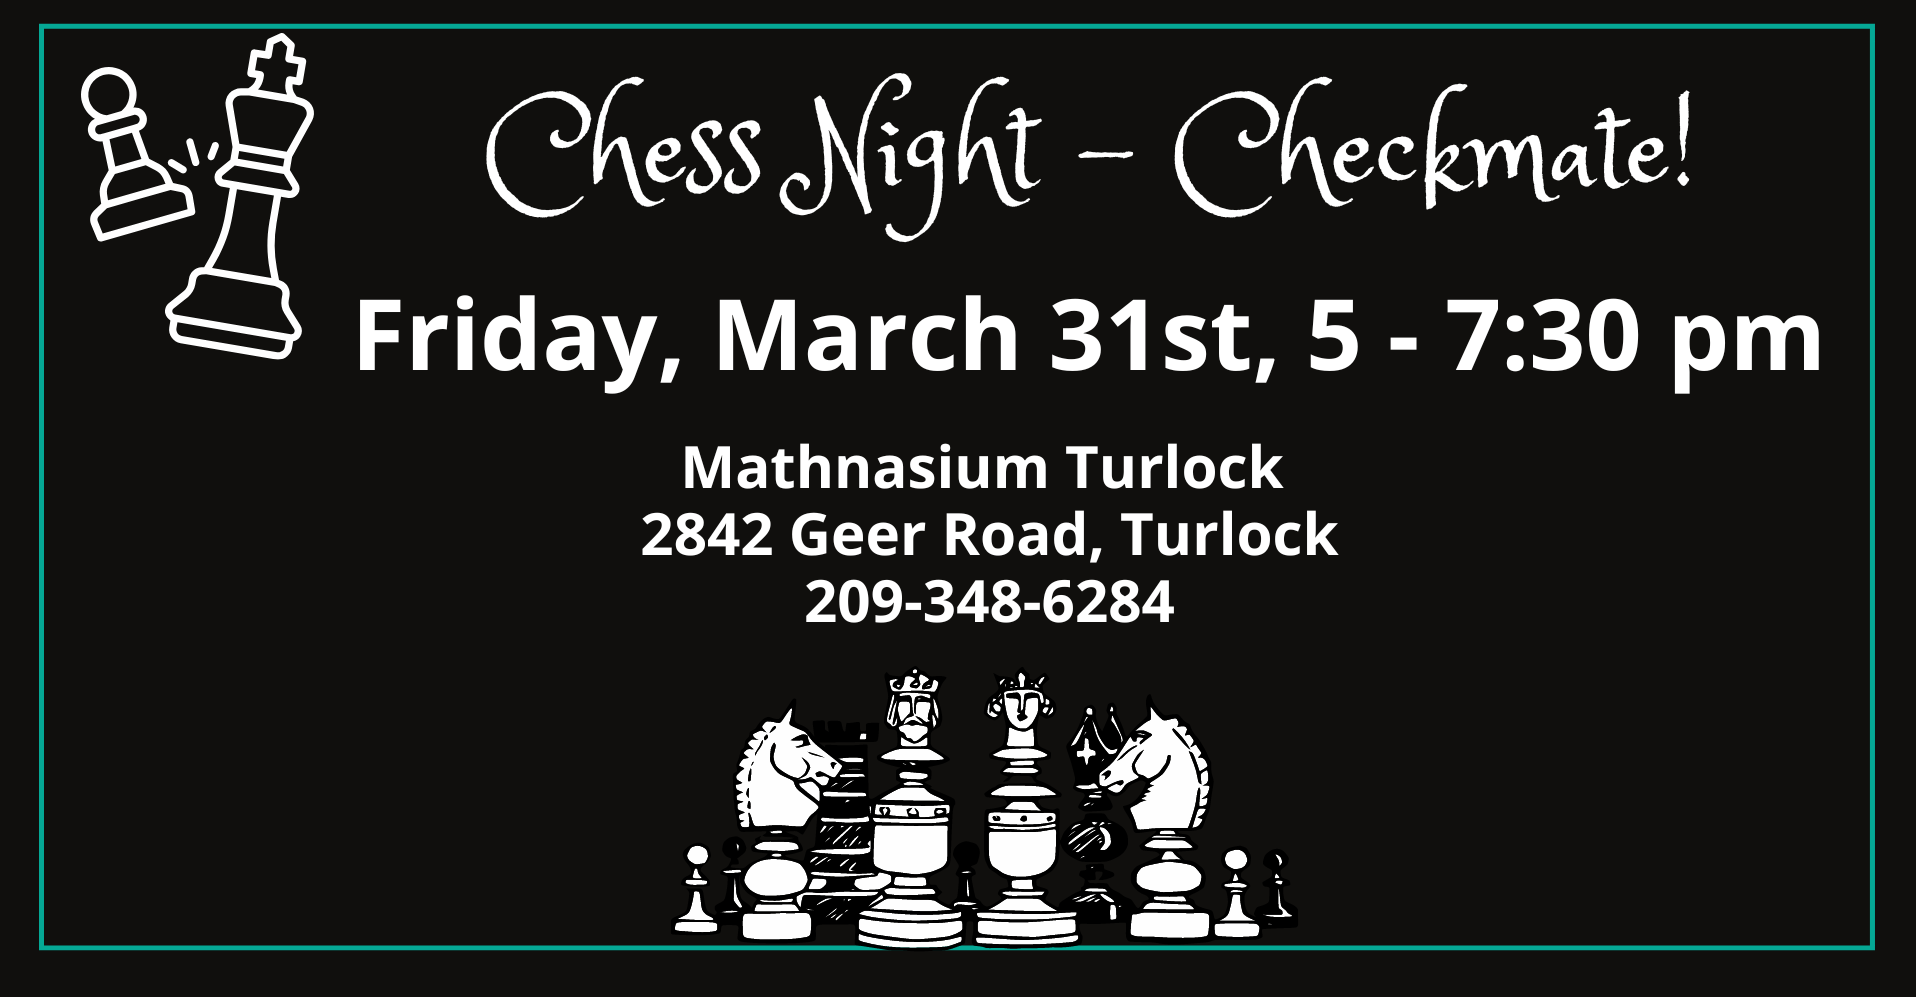 Chess Night - Checkmate!